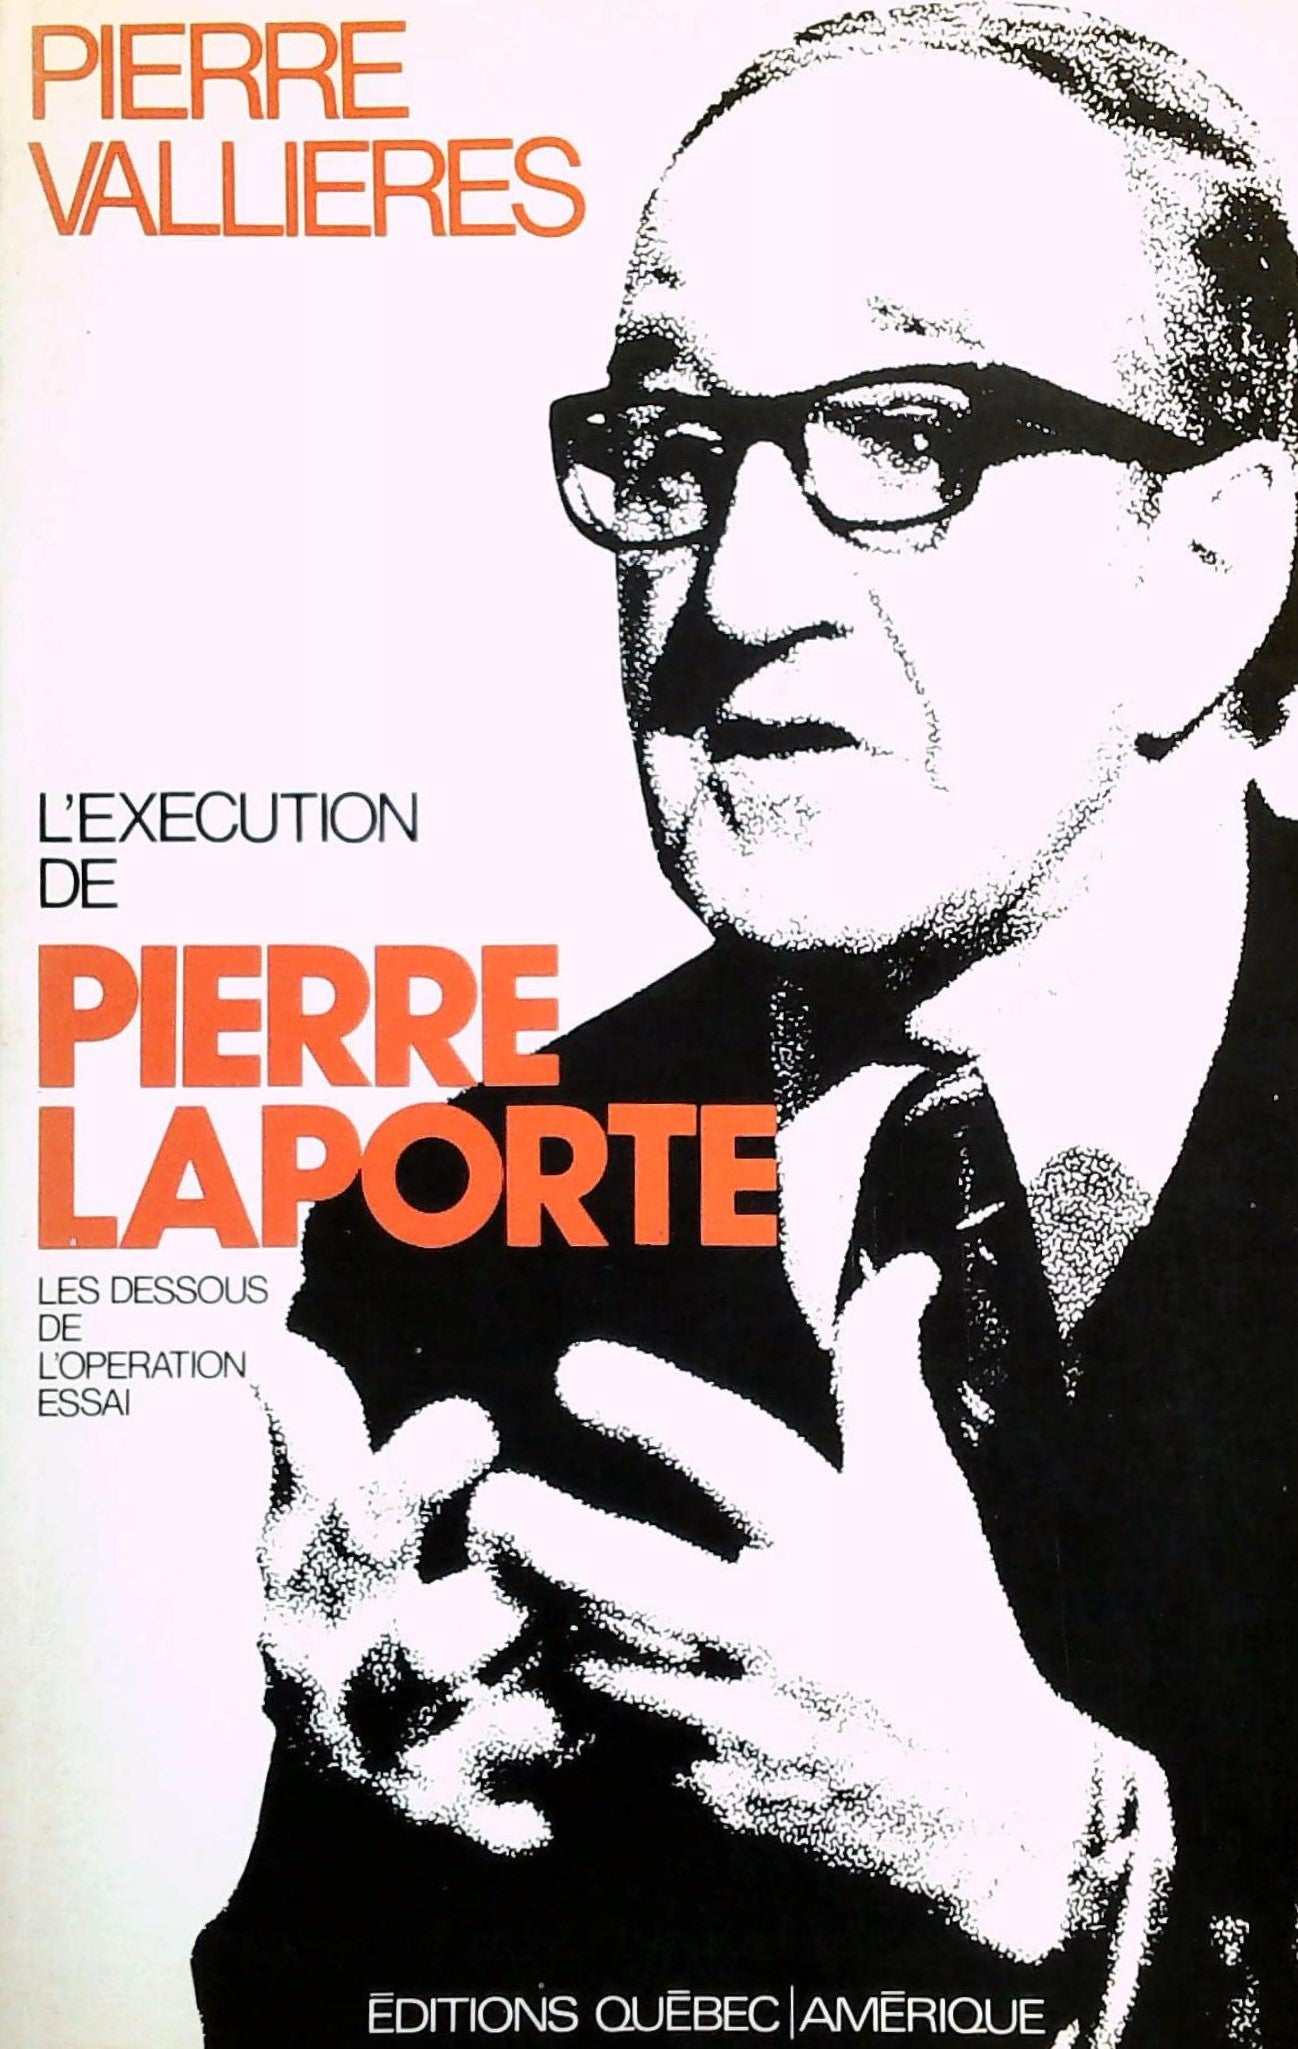 Livre ISBN 0885520299 L'exécution de Pierre Laporte : Les dessous de l'opération (Pierre Vallières)